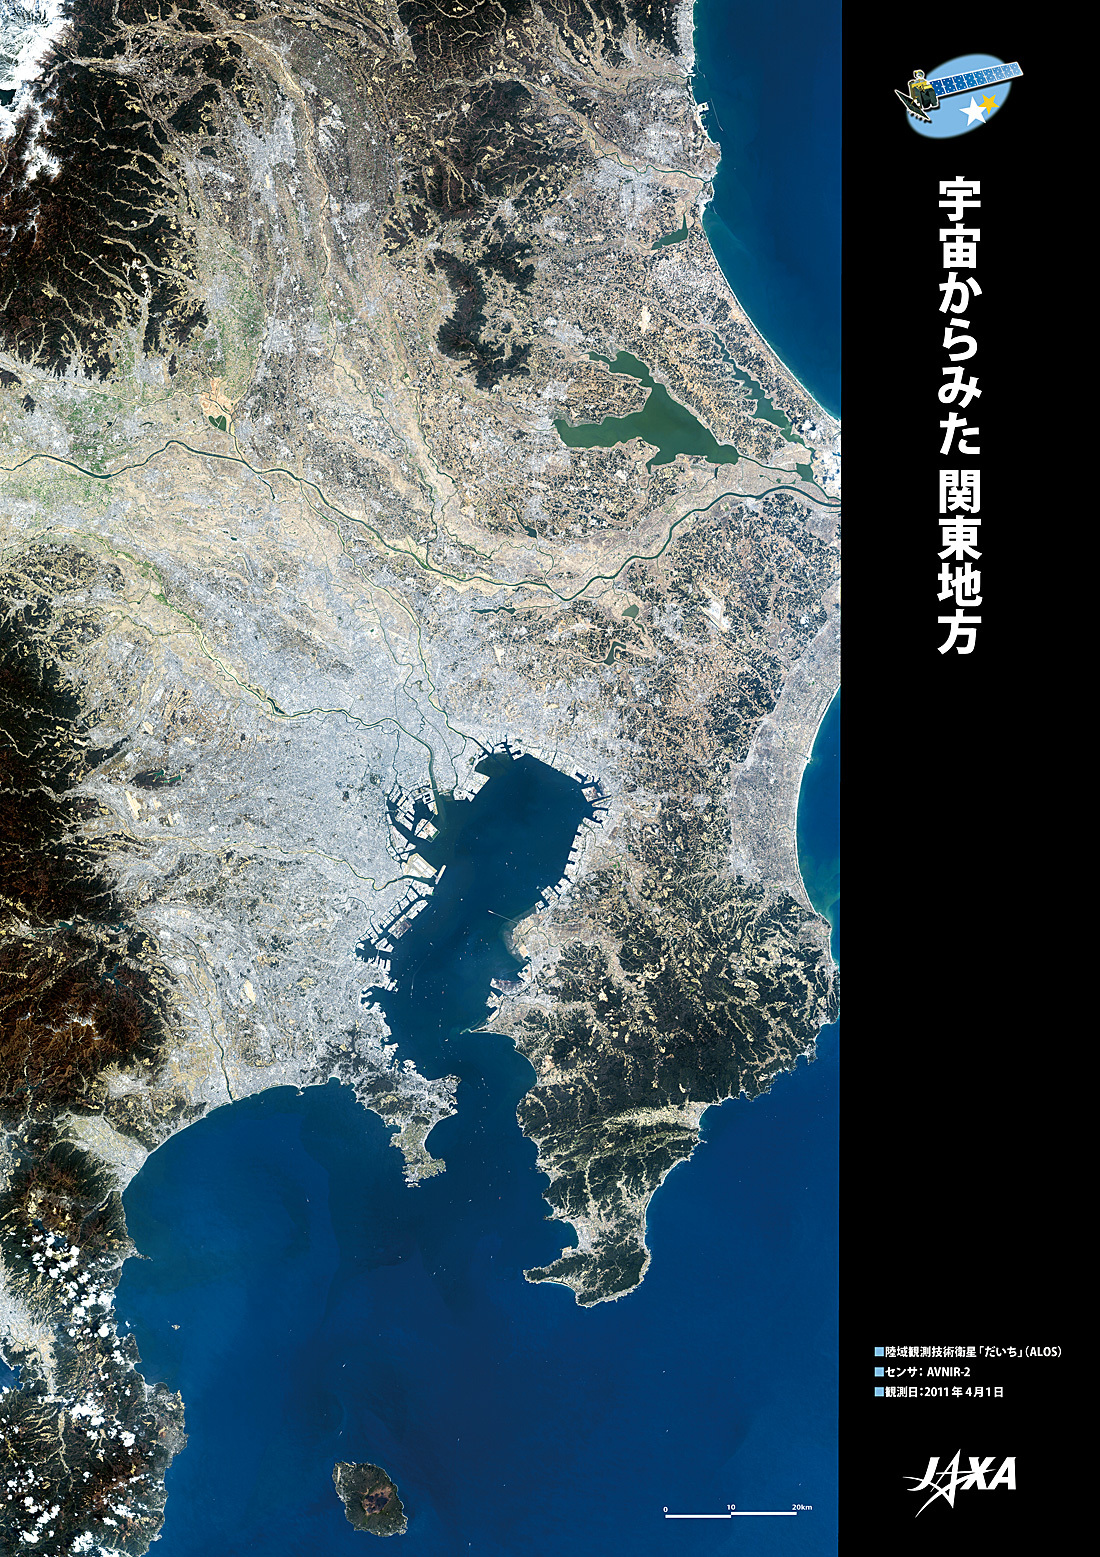 だいちから見た日本の都市 関東地方:衛星画像（ポスター仕上げ）